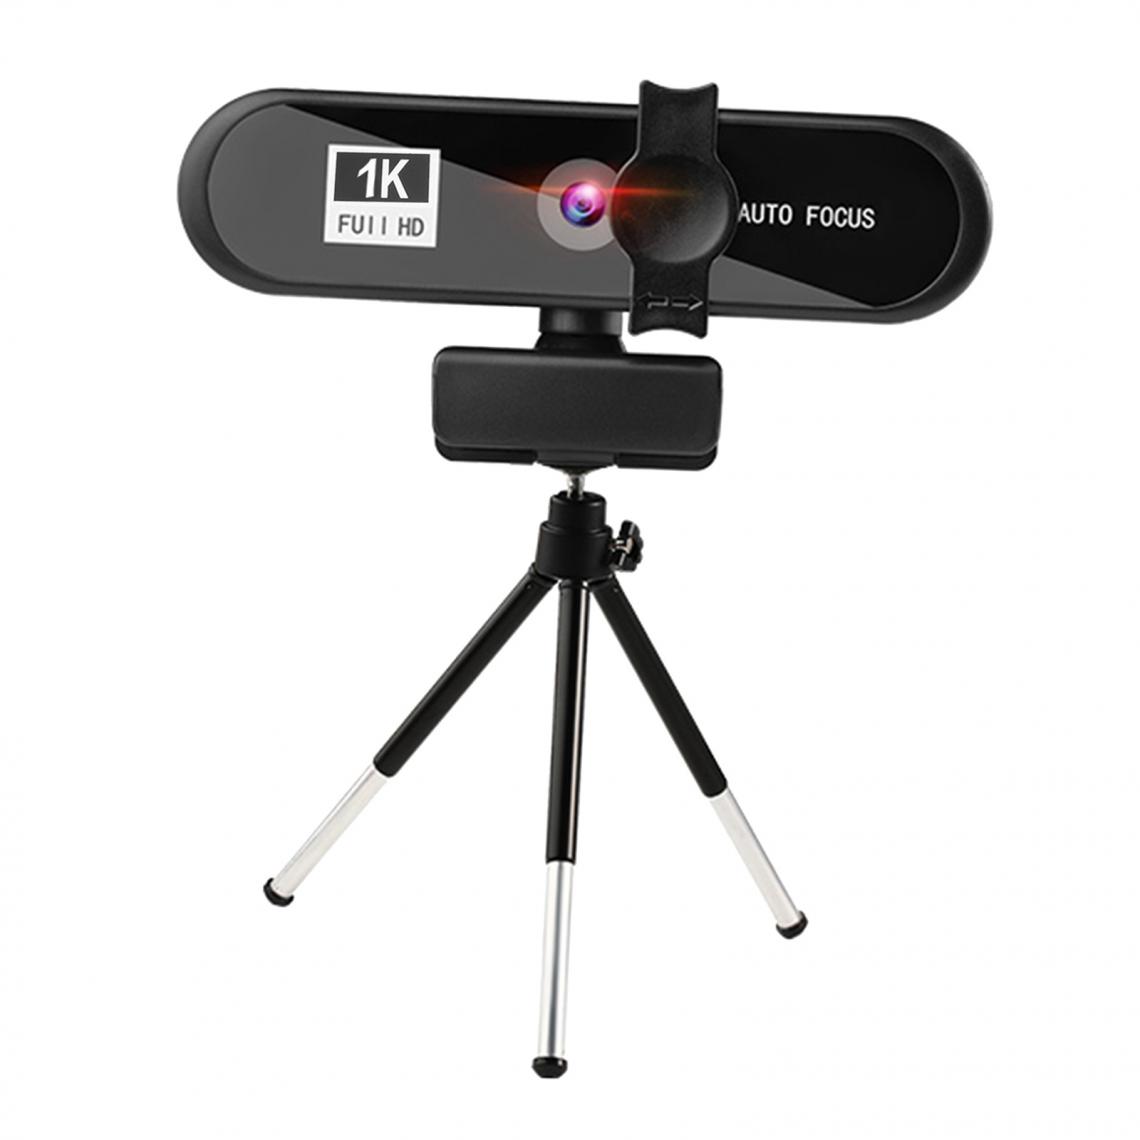 marque generique - Mise Au Point Automatique De La Webcam En Streaming Full HD 4K Pour La Diffusion En Direct 1k Noir - Webcam